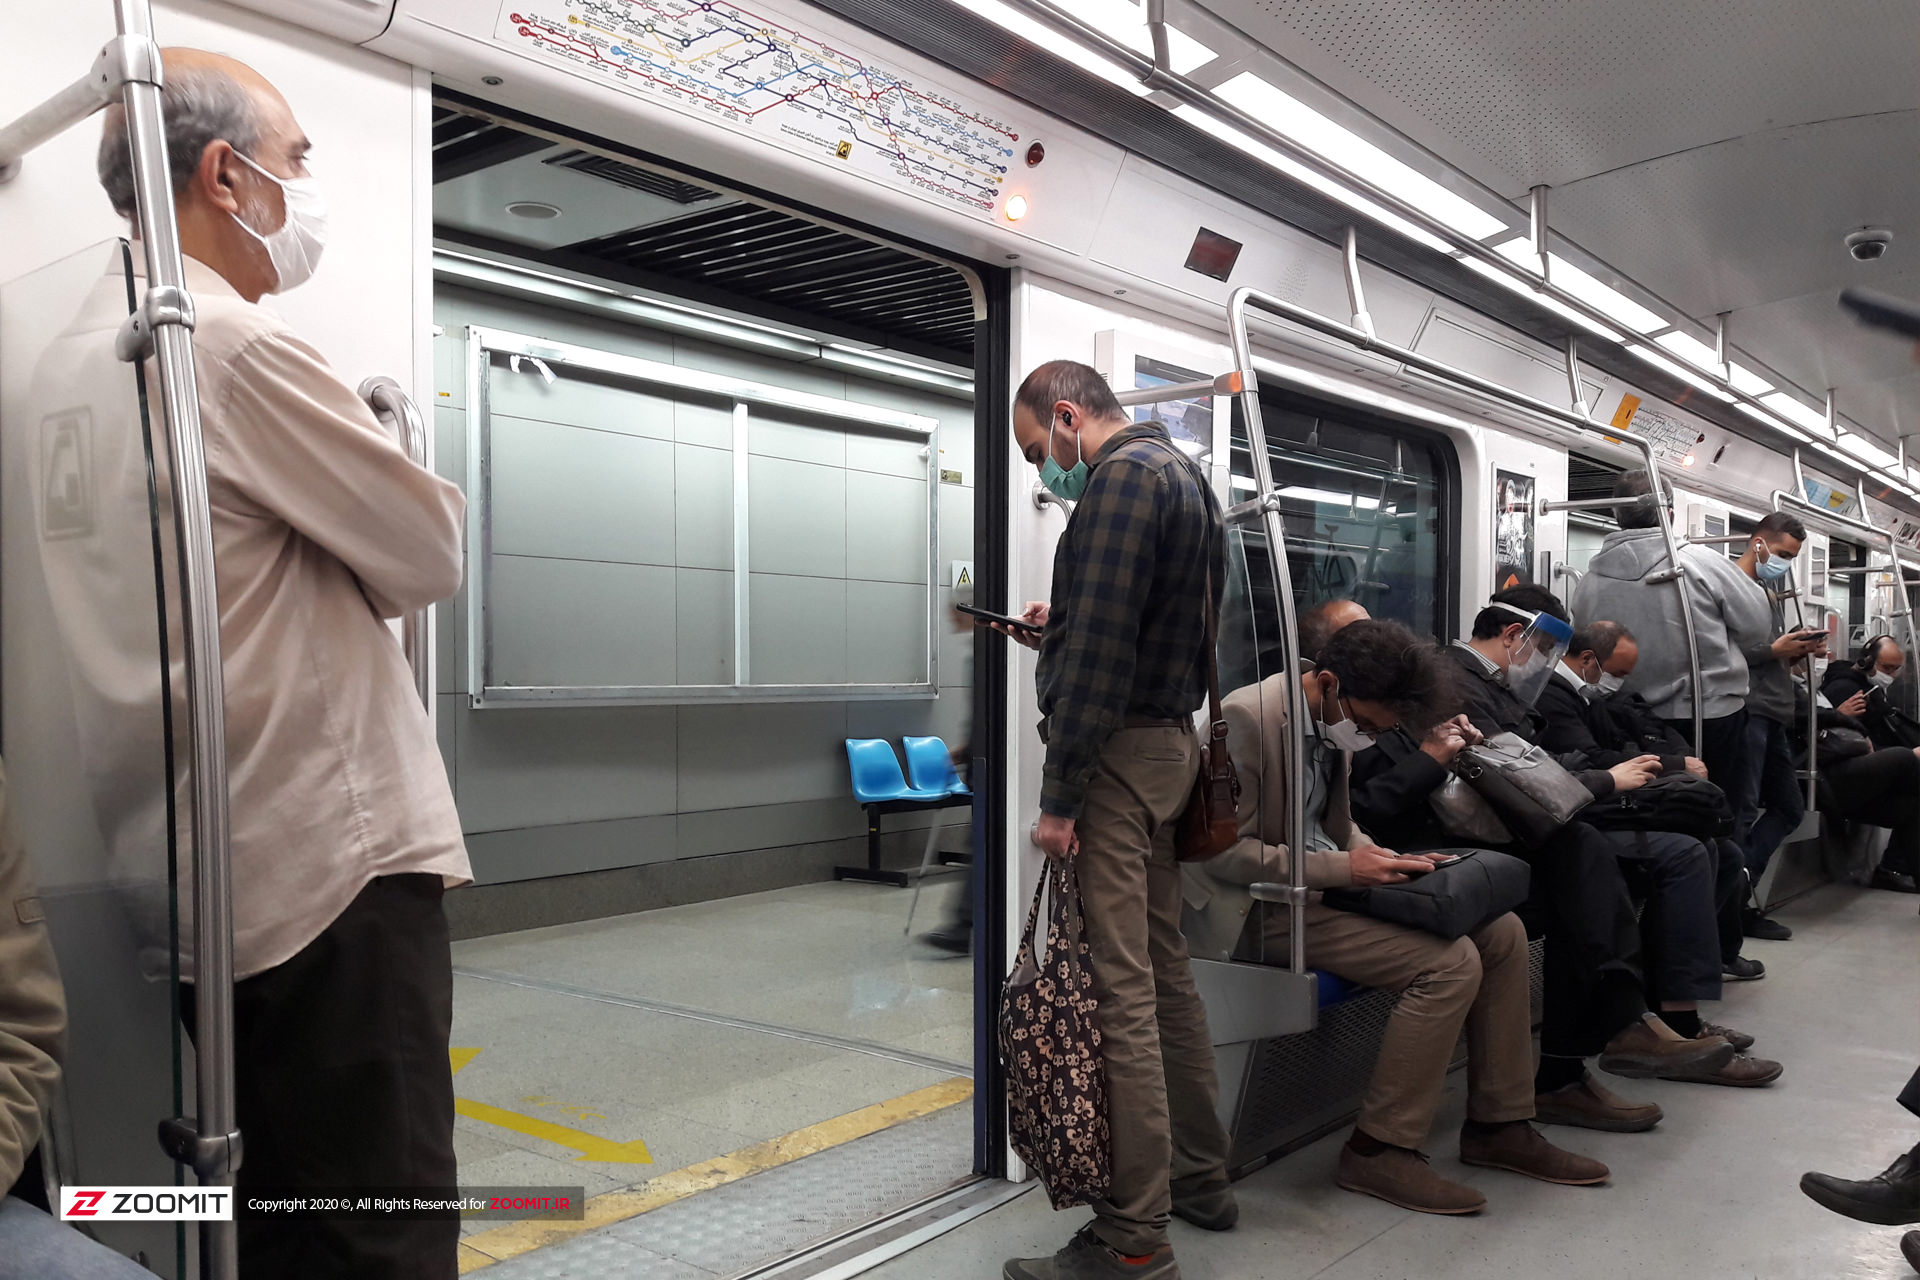 وزارت بهداشت: سوار مترو و اتوبوس شلوغ نشوید